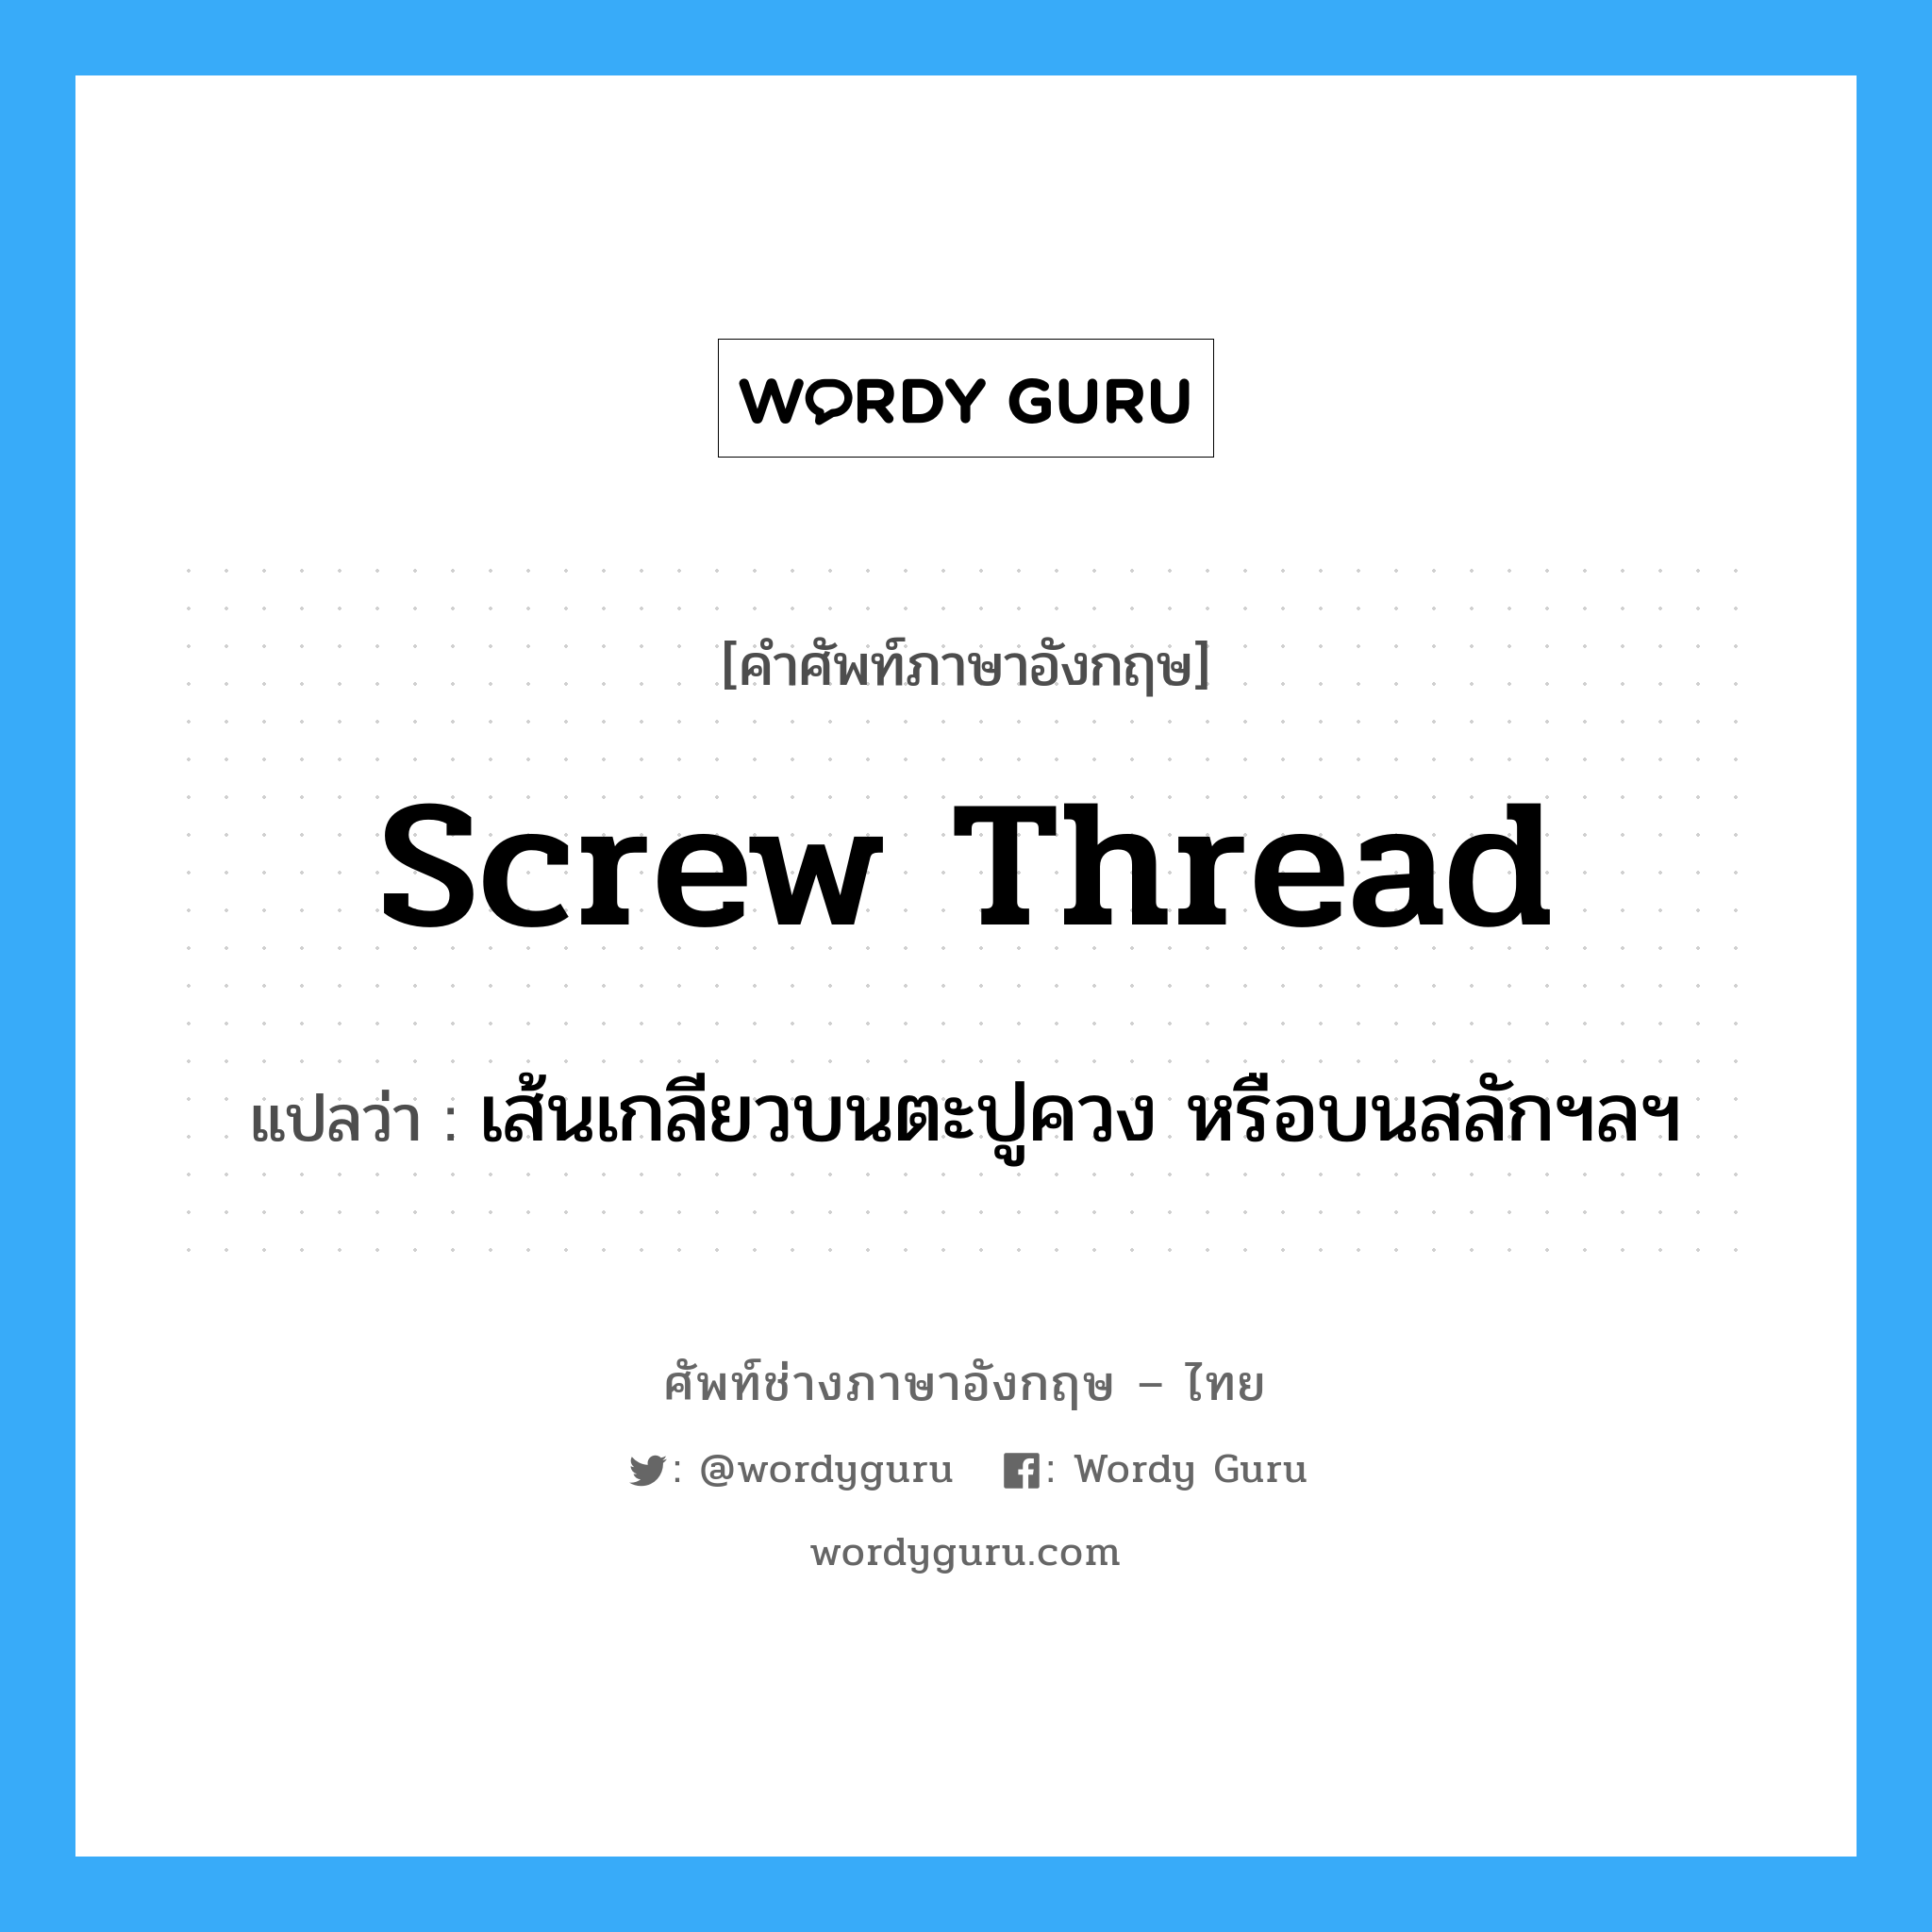 screw thread แปลว่า?, คำศัพท์ช่างภาษาอังกฤษ - ไทย screw thread คำศัพท์ภาษาอังกฤษ screw thread แปลว่า เส้นเกลียวบนตะปูควง หรือบนสลักฯลฯ